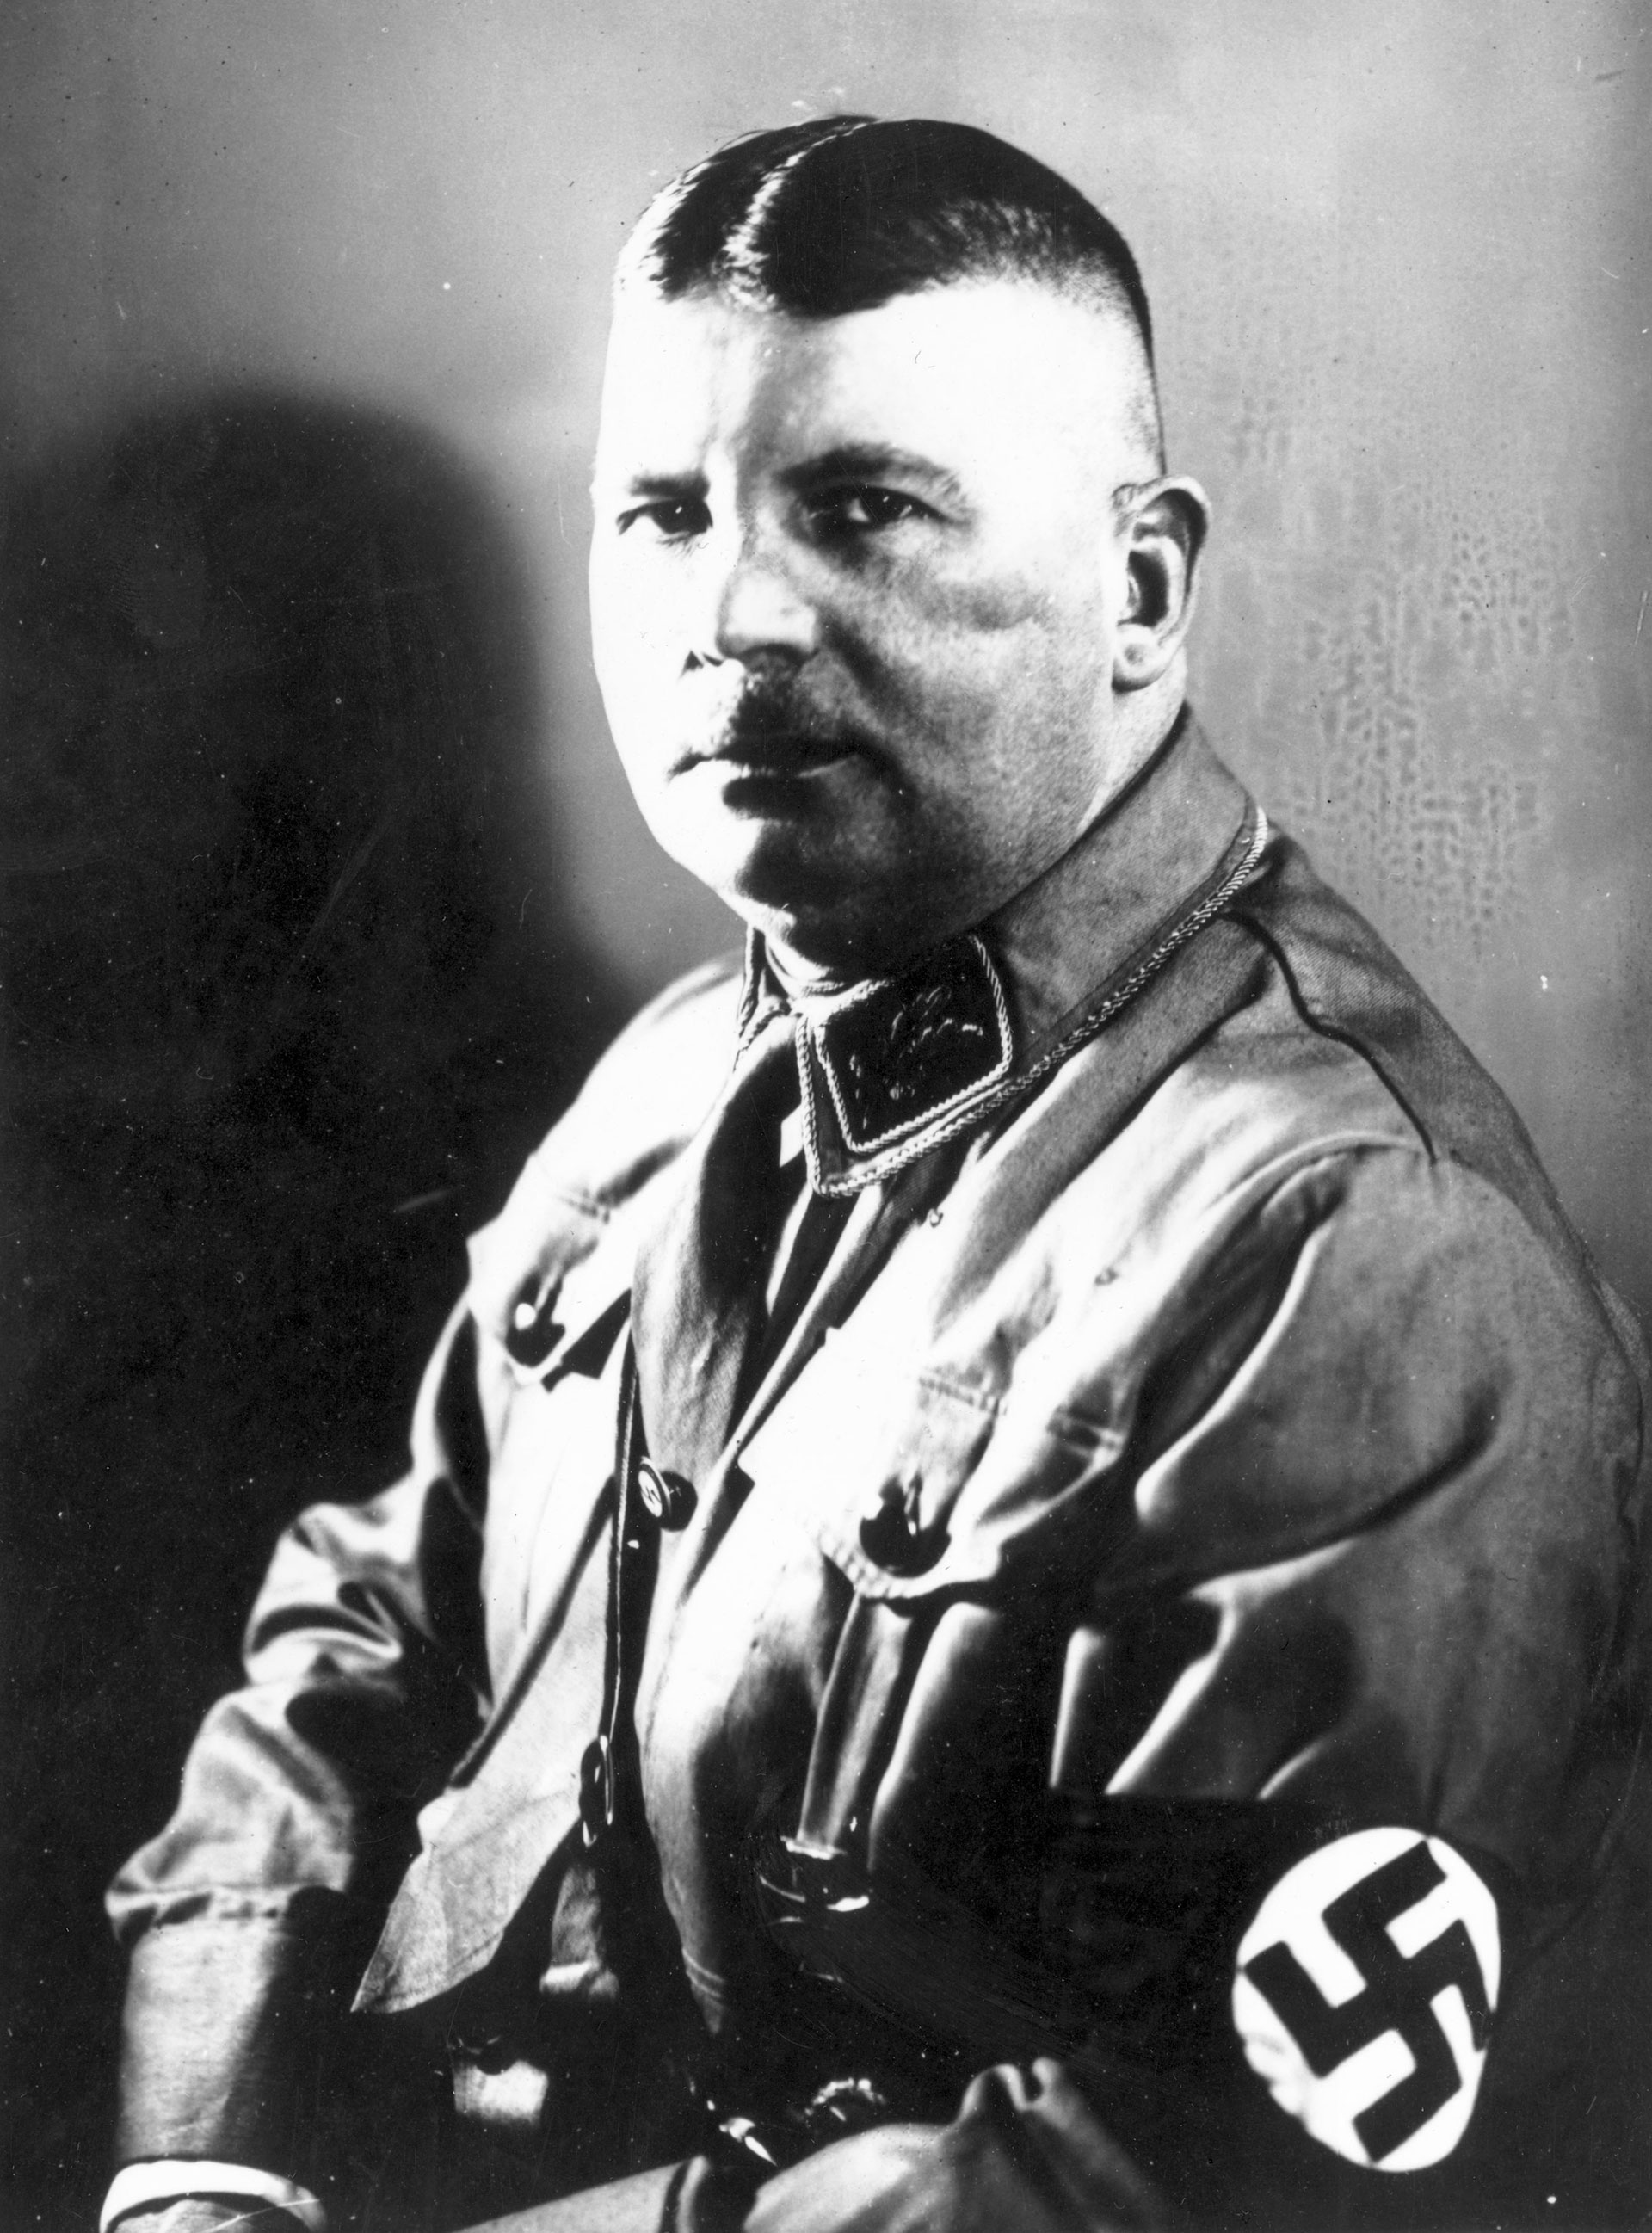 Unido por años de lucha a Röhm, Hitler se negaba a desplazarlo e incluso le “toleraba” su homosexualidad confesa, algo que a cualquier otro le hubiese costado la expulsión de partido (Keystone/Getty Images)